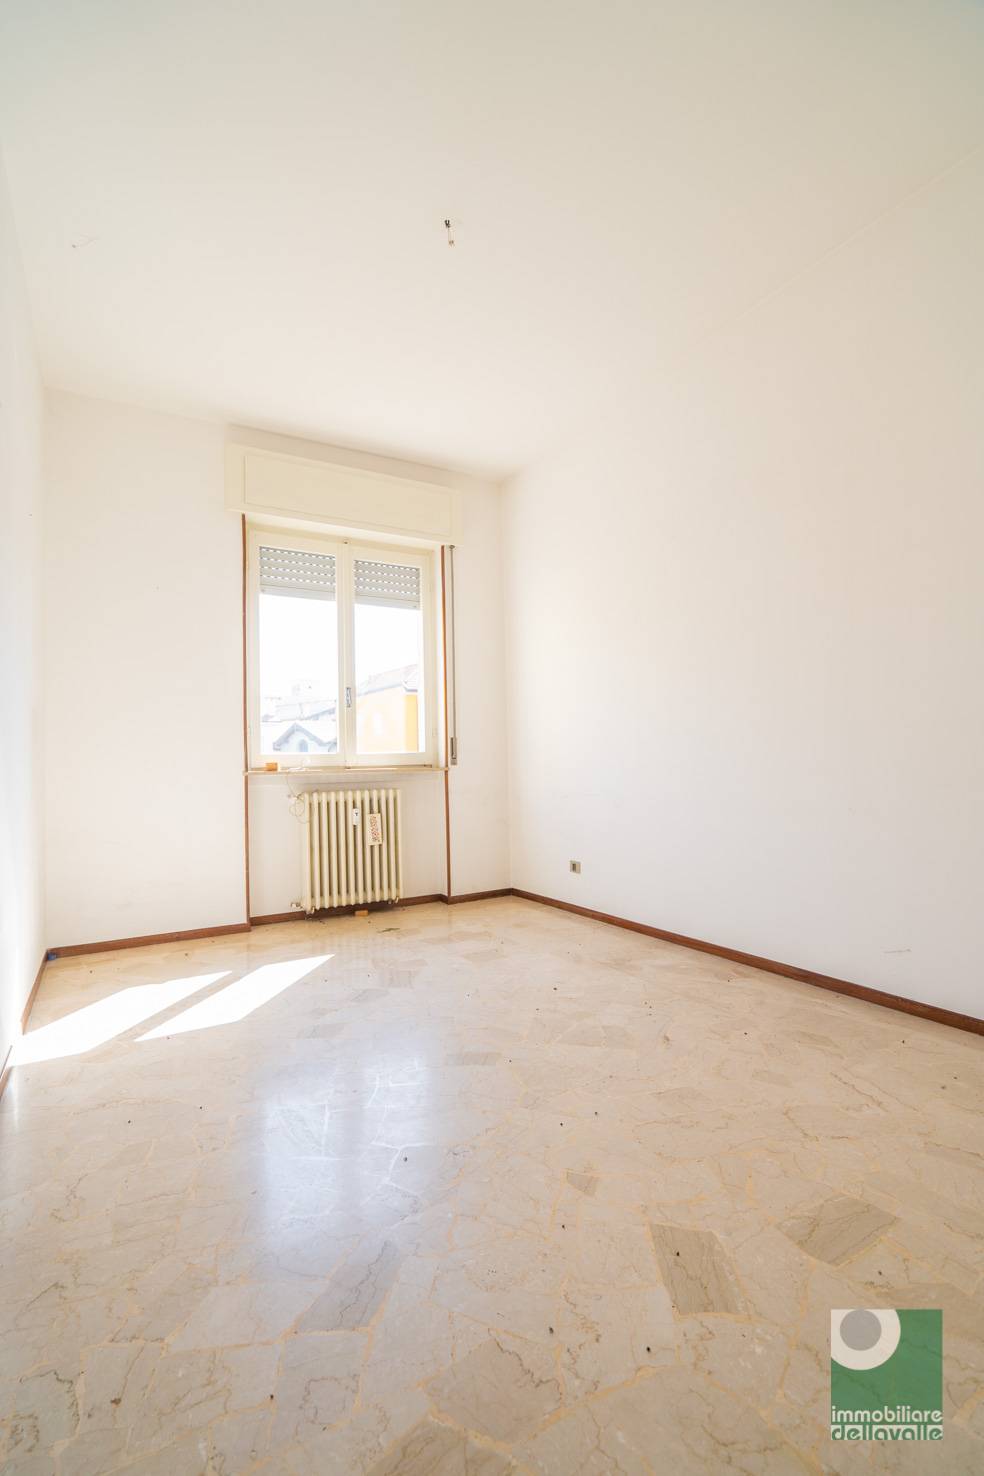 Appartamento in vendita a Oleggio, 3 locali, prezzo € 75.000 | CambioCasa.it